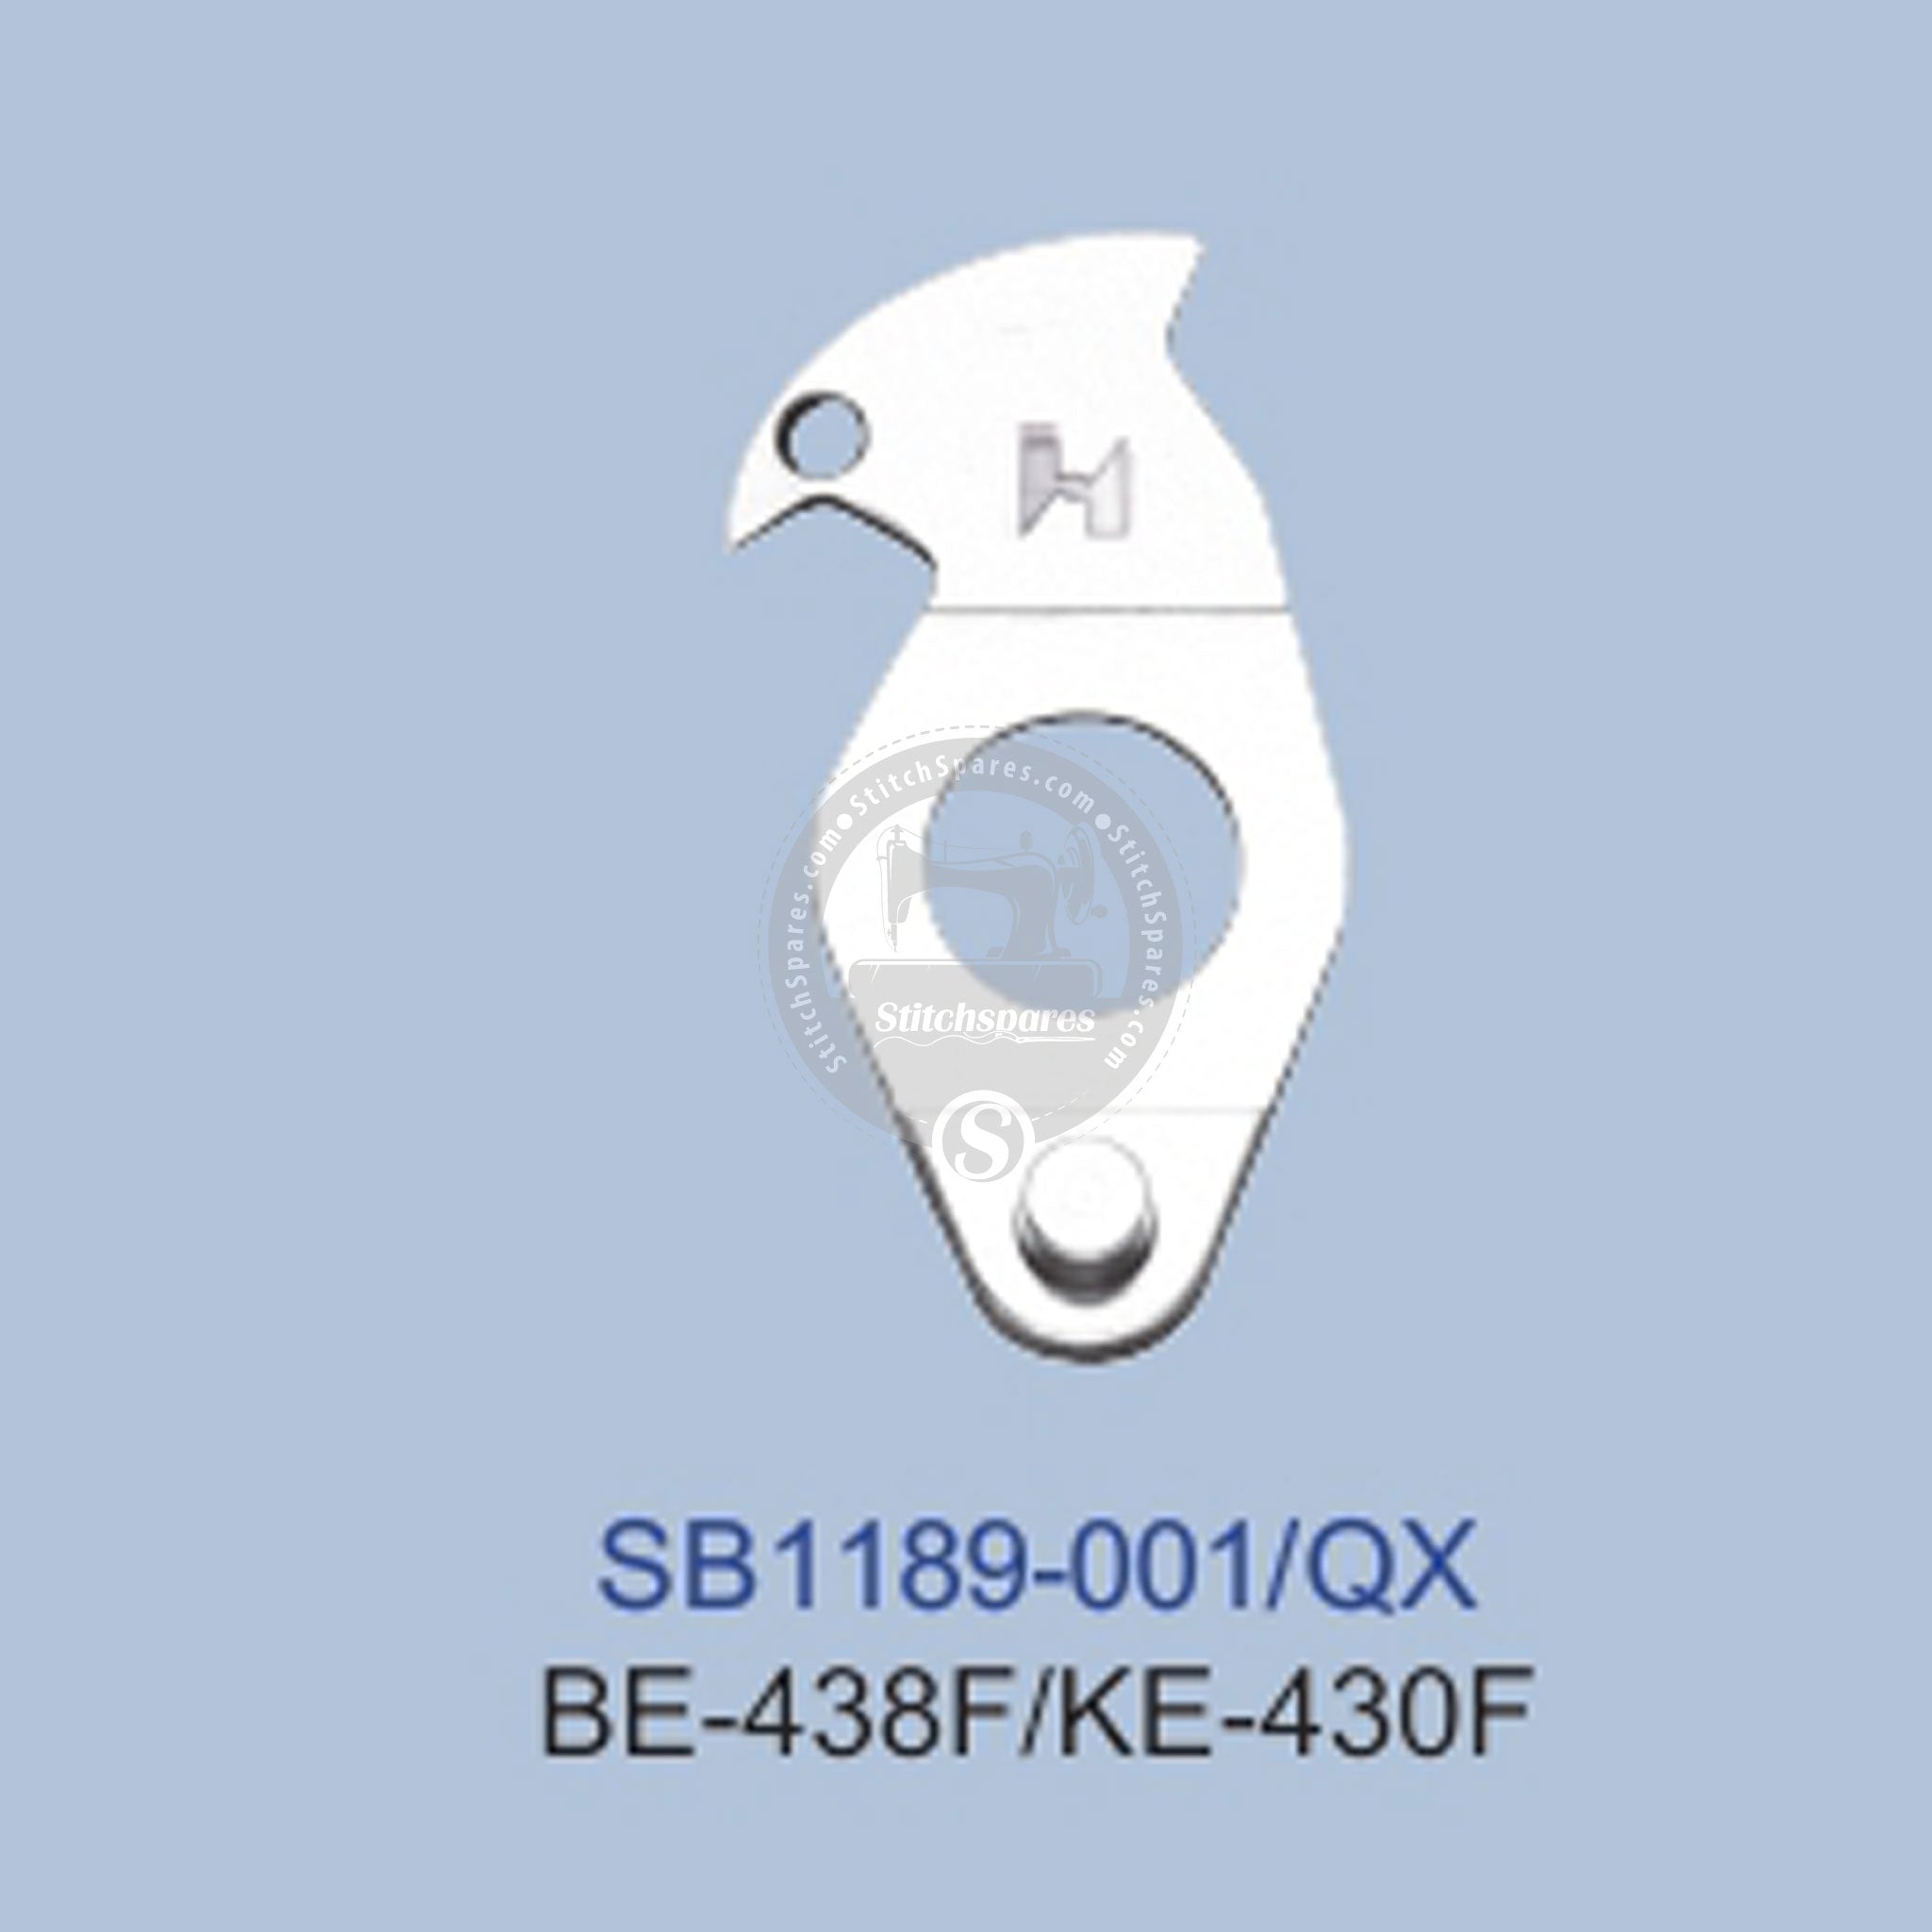 STRONGH SB1189-001 BROTHER BE-438F / KE-430F BARTACKIG MASCHINENERSATZTEIL